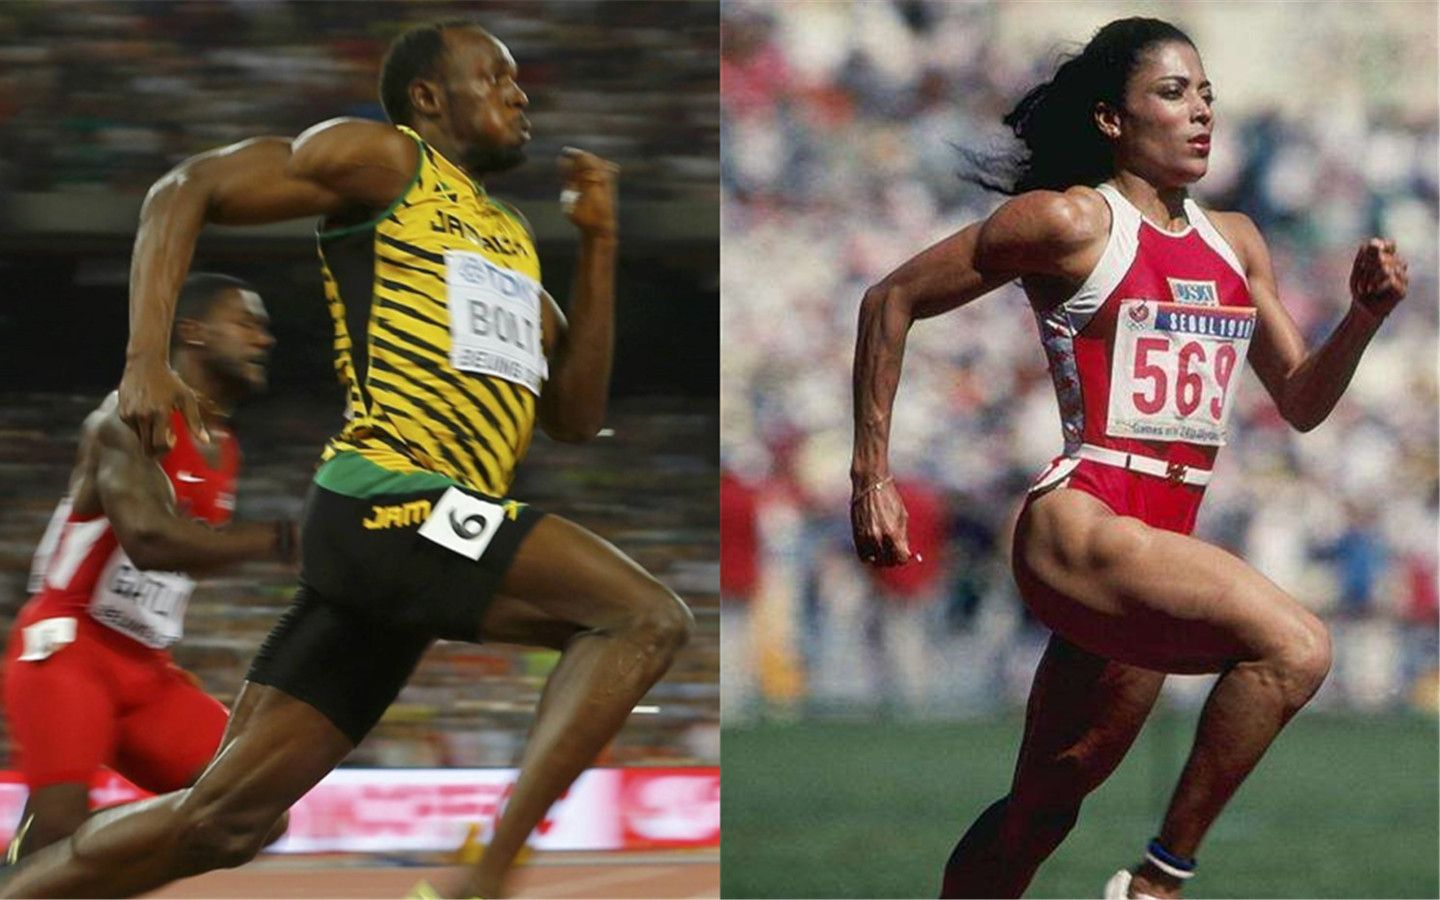 男子19秒19和女子21秒34的200米世界纪录哪个更难被打破呢？